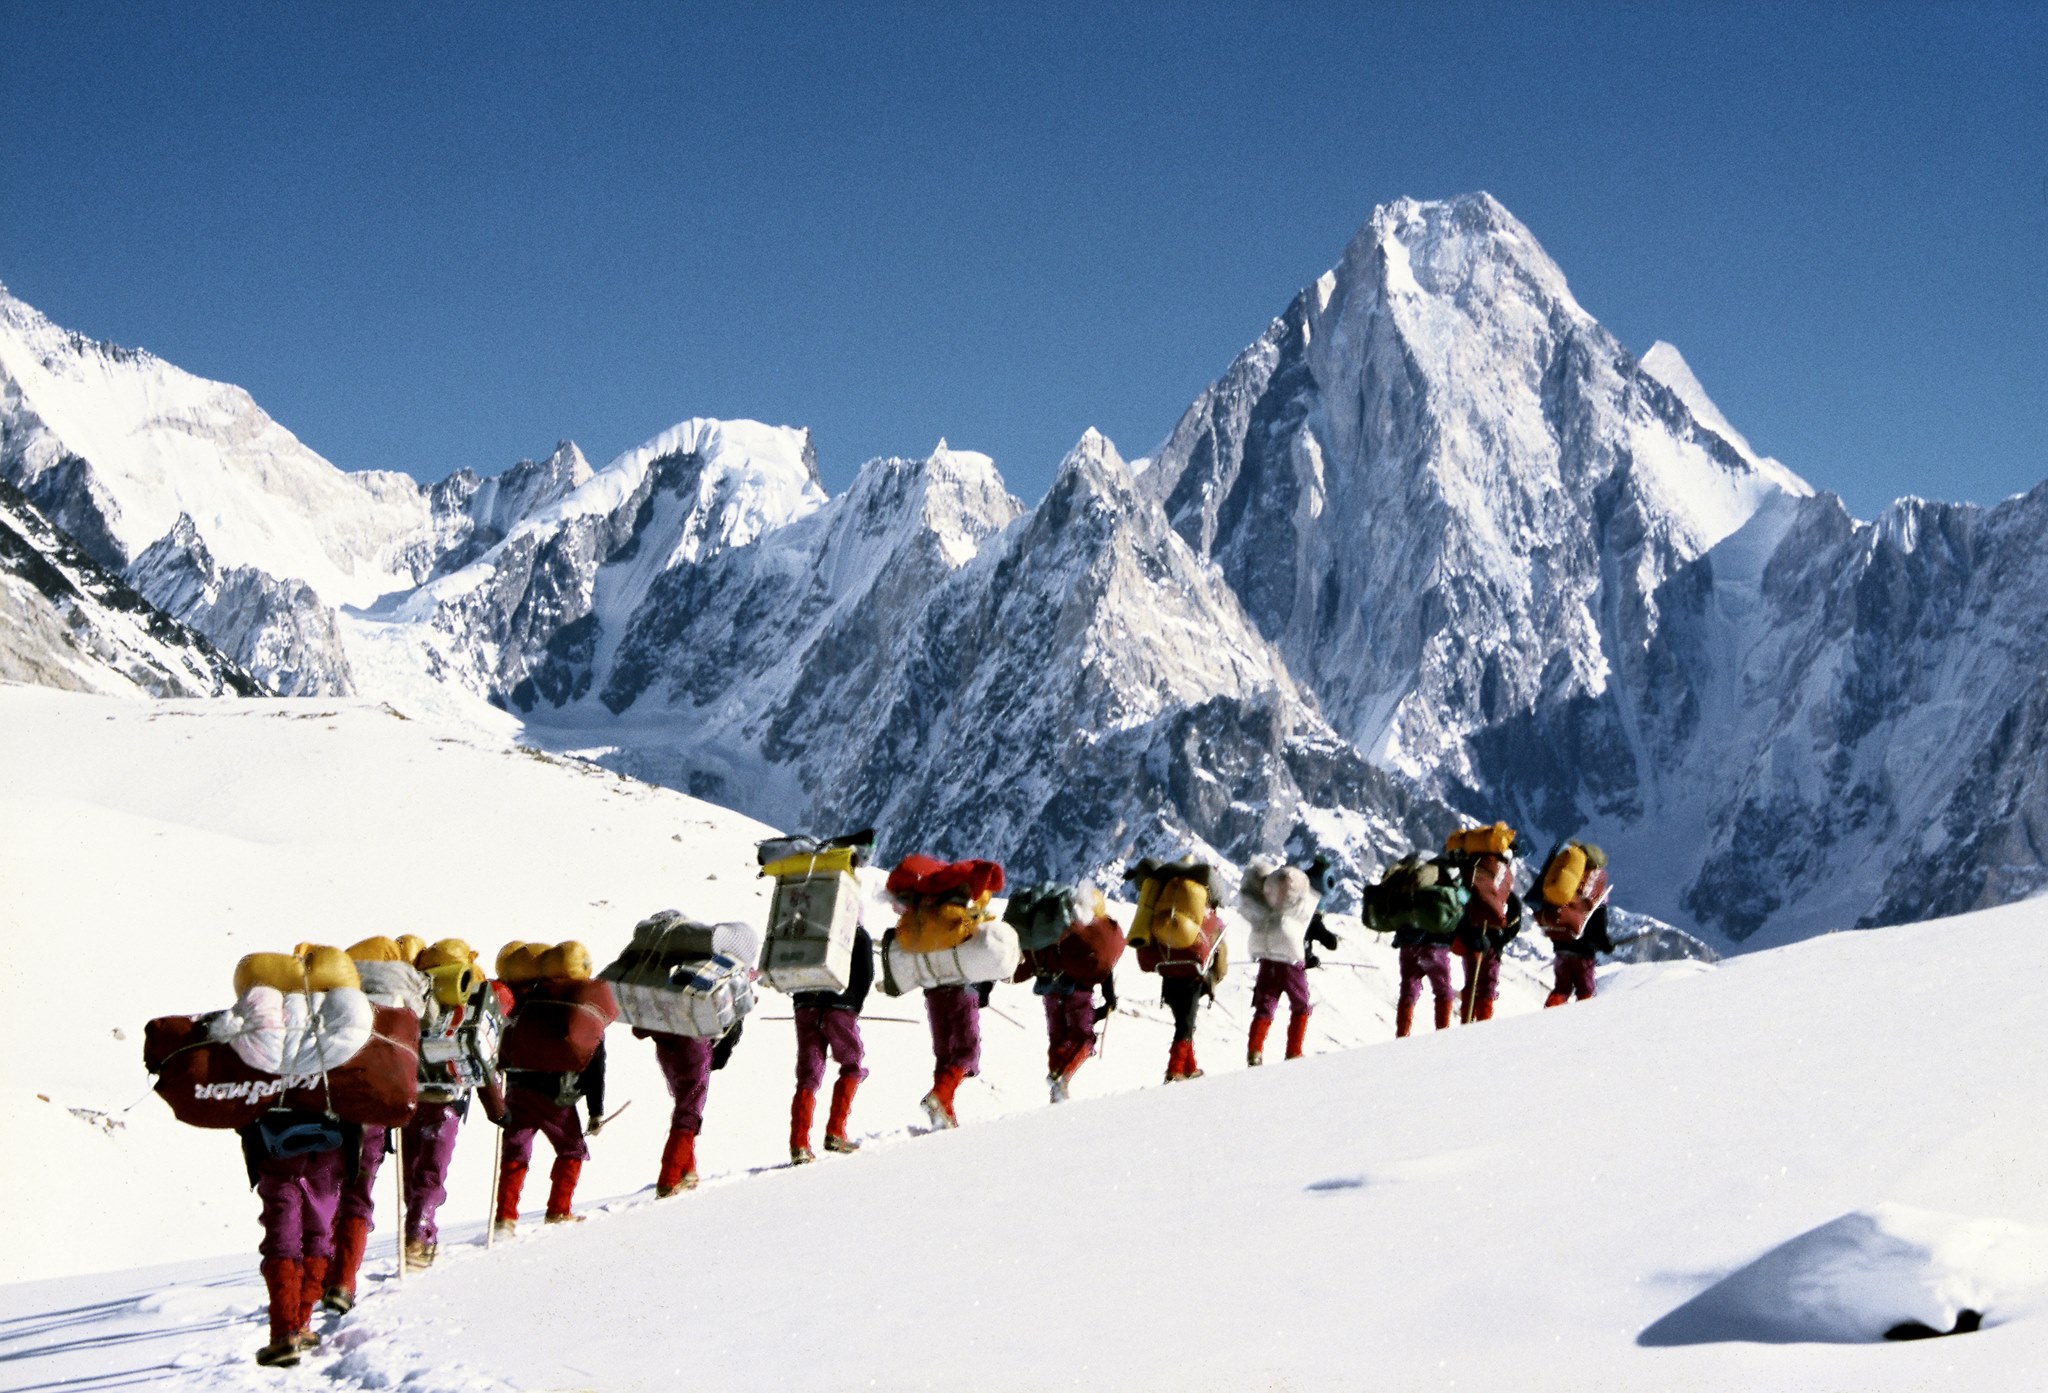 Vonul az expedíció a Gasherbrum IV előtt Forrás: Krzysztof Wielicki: mój wybor Facebook